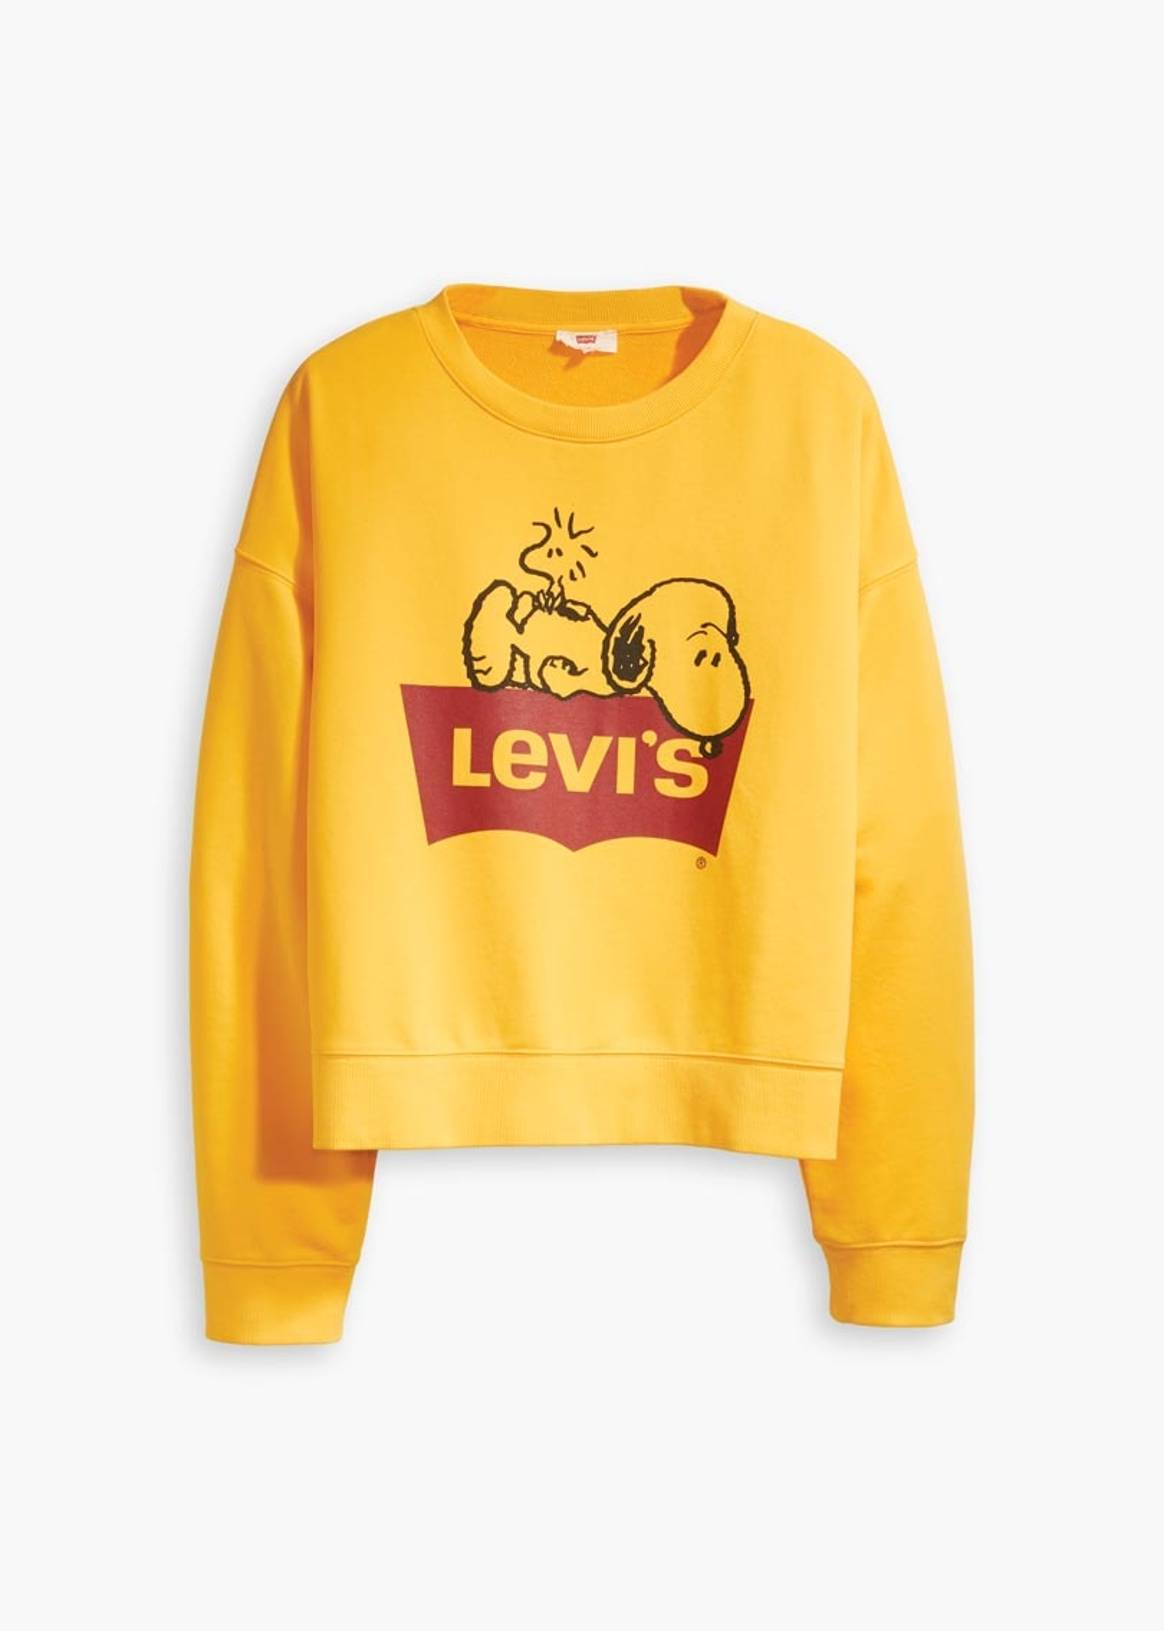 Snoopy se pone de moda gracias a Levi's